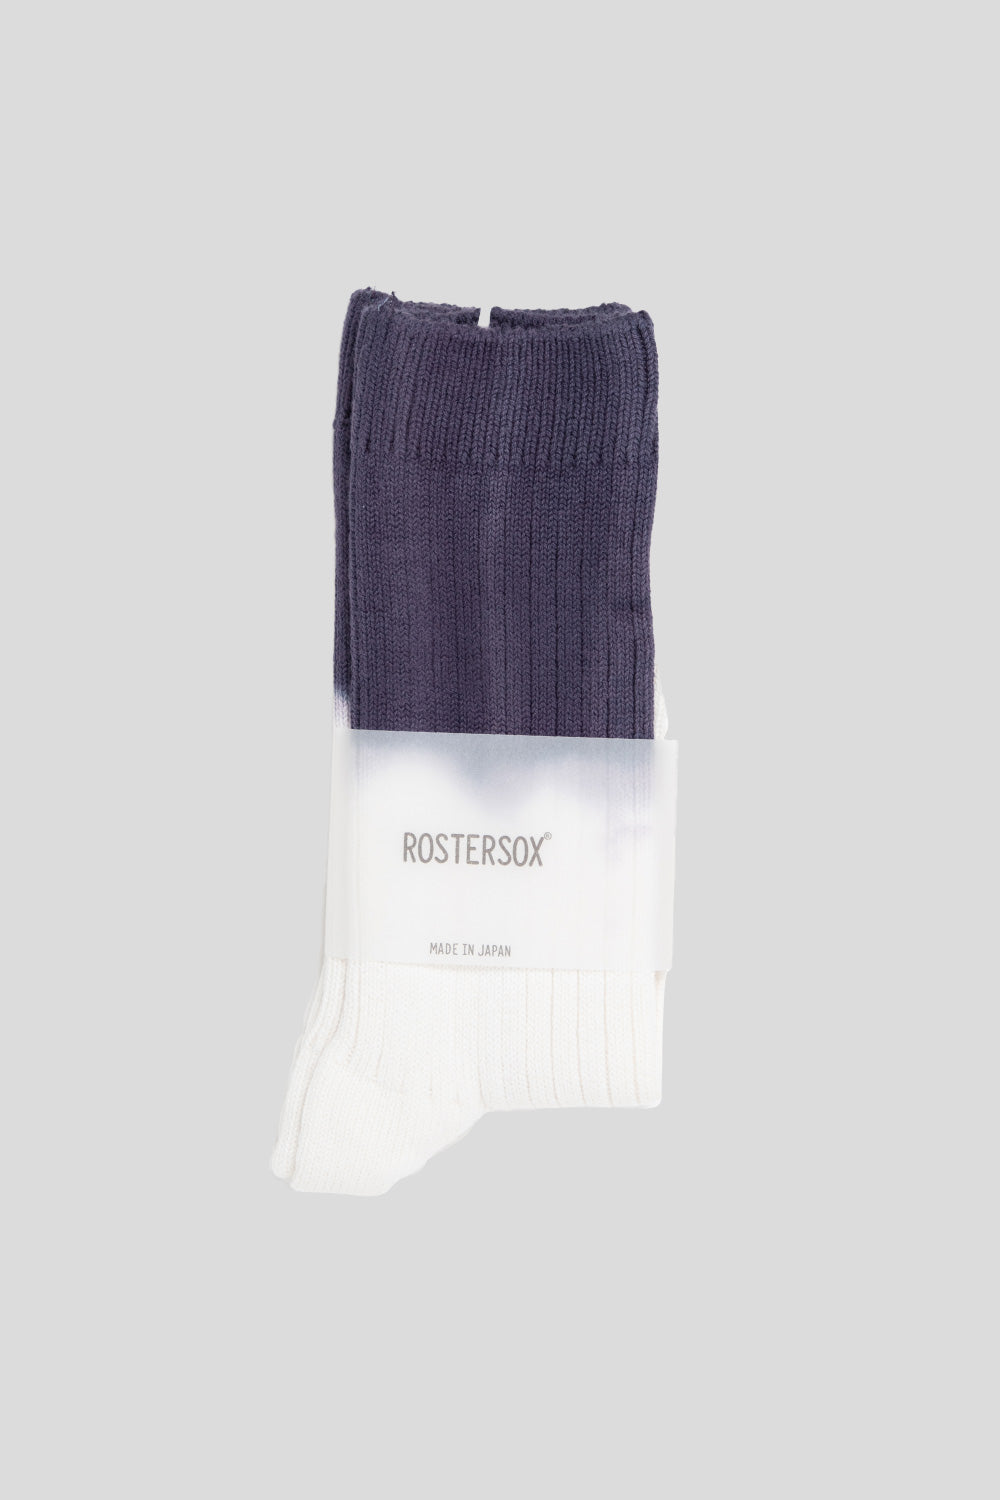 Rostersox HRD Rib Socks in Purple